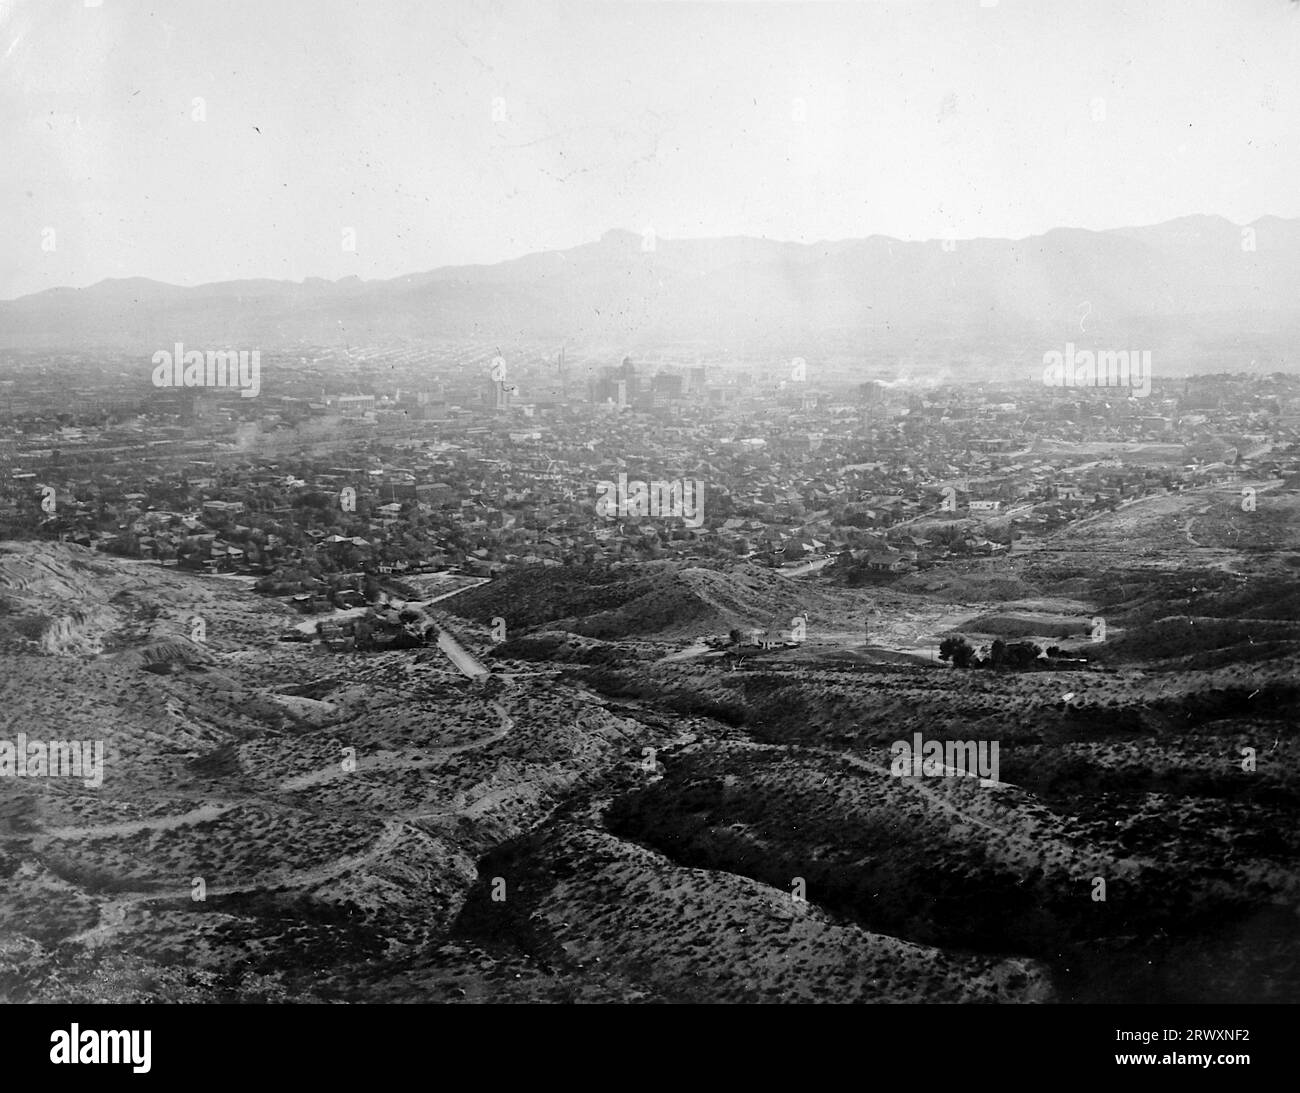 Blick auf El Paso vom Camp aus. Seltenes Foto: Aus einer Sammlung eines unbekannten britischen Soldaten über die No. 1 Composite Demonstration, AA Battery, Tour durch die USA, vom 11. Juli 1943. Dies ist eines von mehr als hundert Bildern in der Sammlung, die im Durchschnitt etwa 4 x 3 Zoll groß waren. Stockfoto